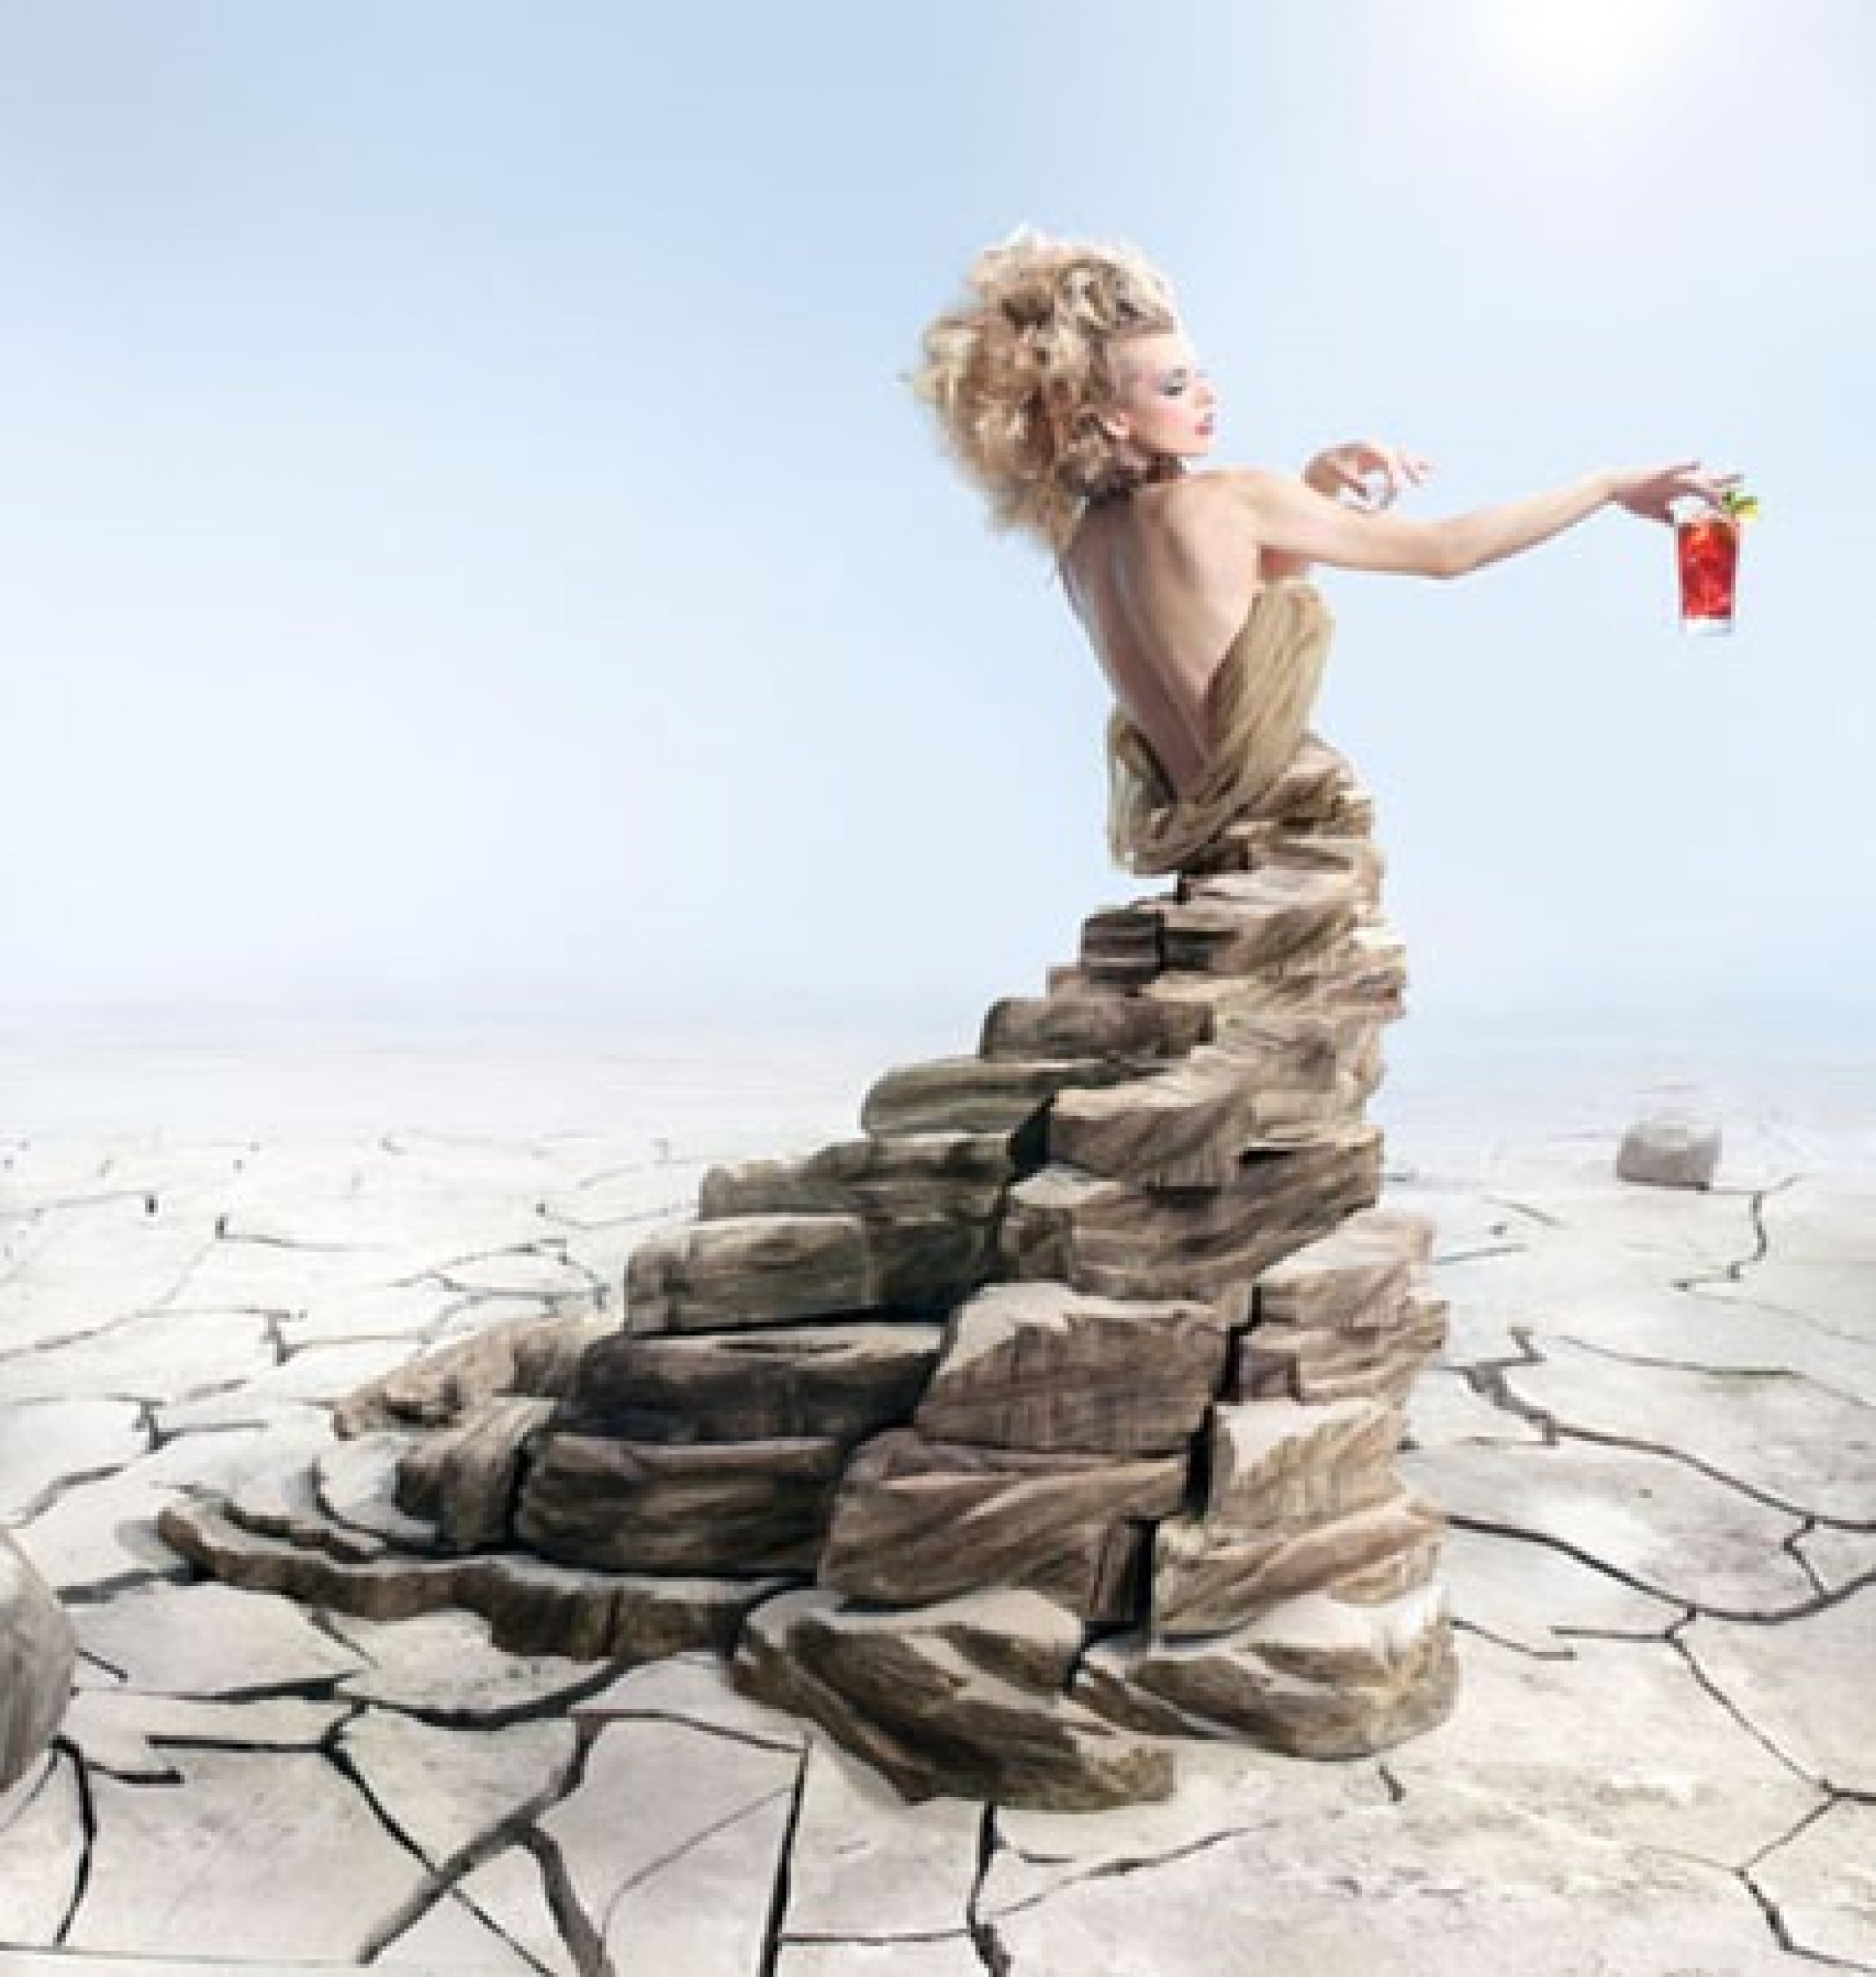 Spectacular Images of 2012 Campari Calendar Featuring Milla Jovovich